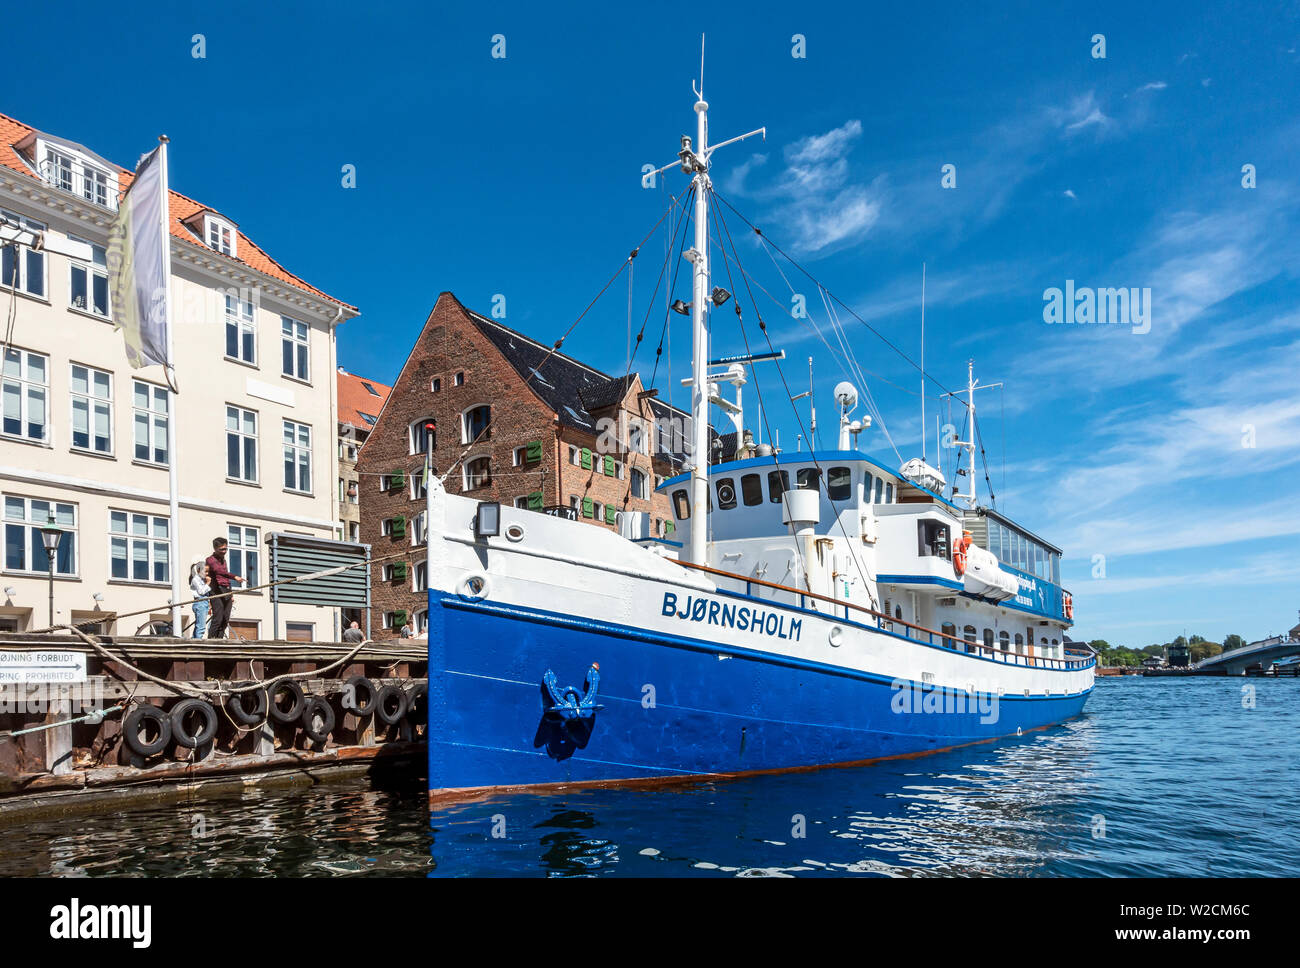 Bateau de Moteur Bjørnsholm amarré à quai dans le port de Copenhague Nyhavn Copenhague Danemark Europe Banque D'Images